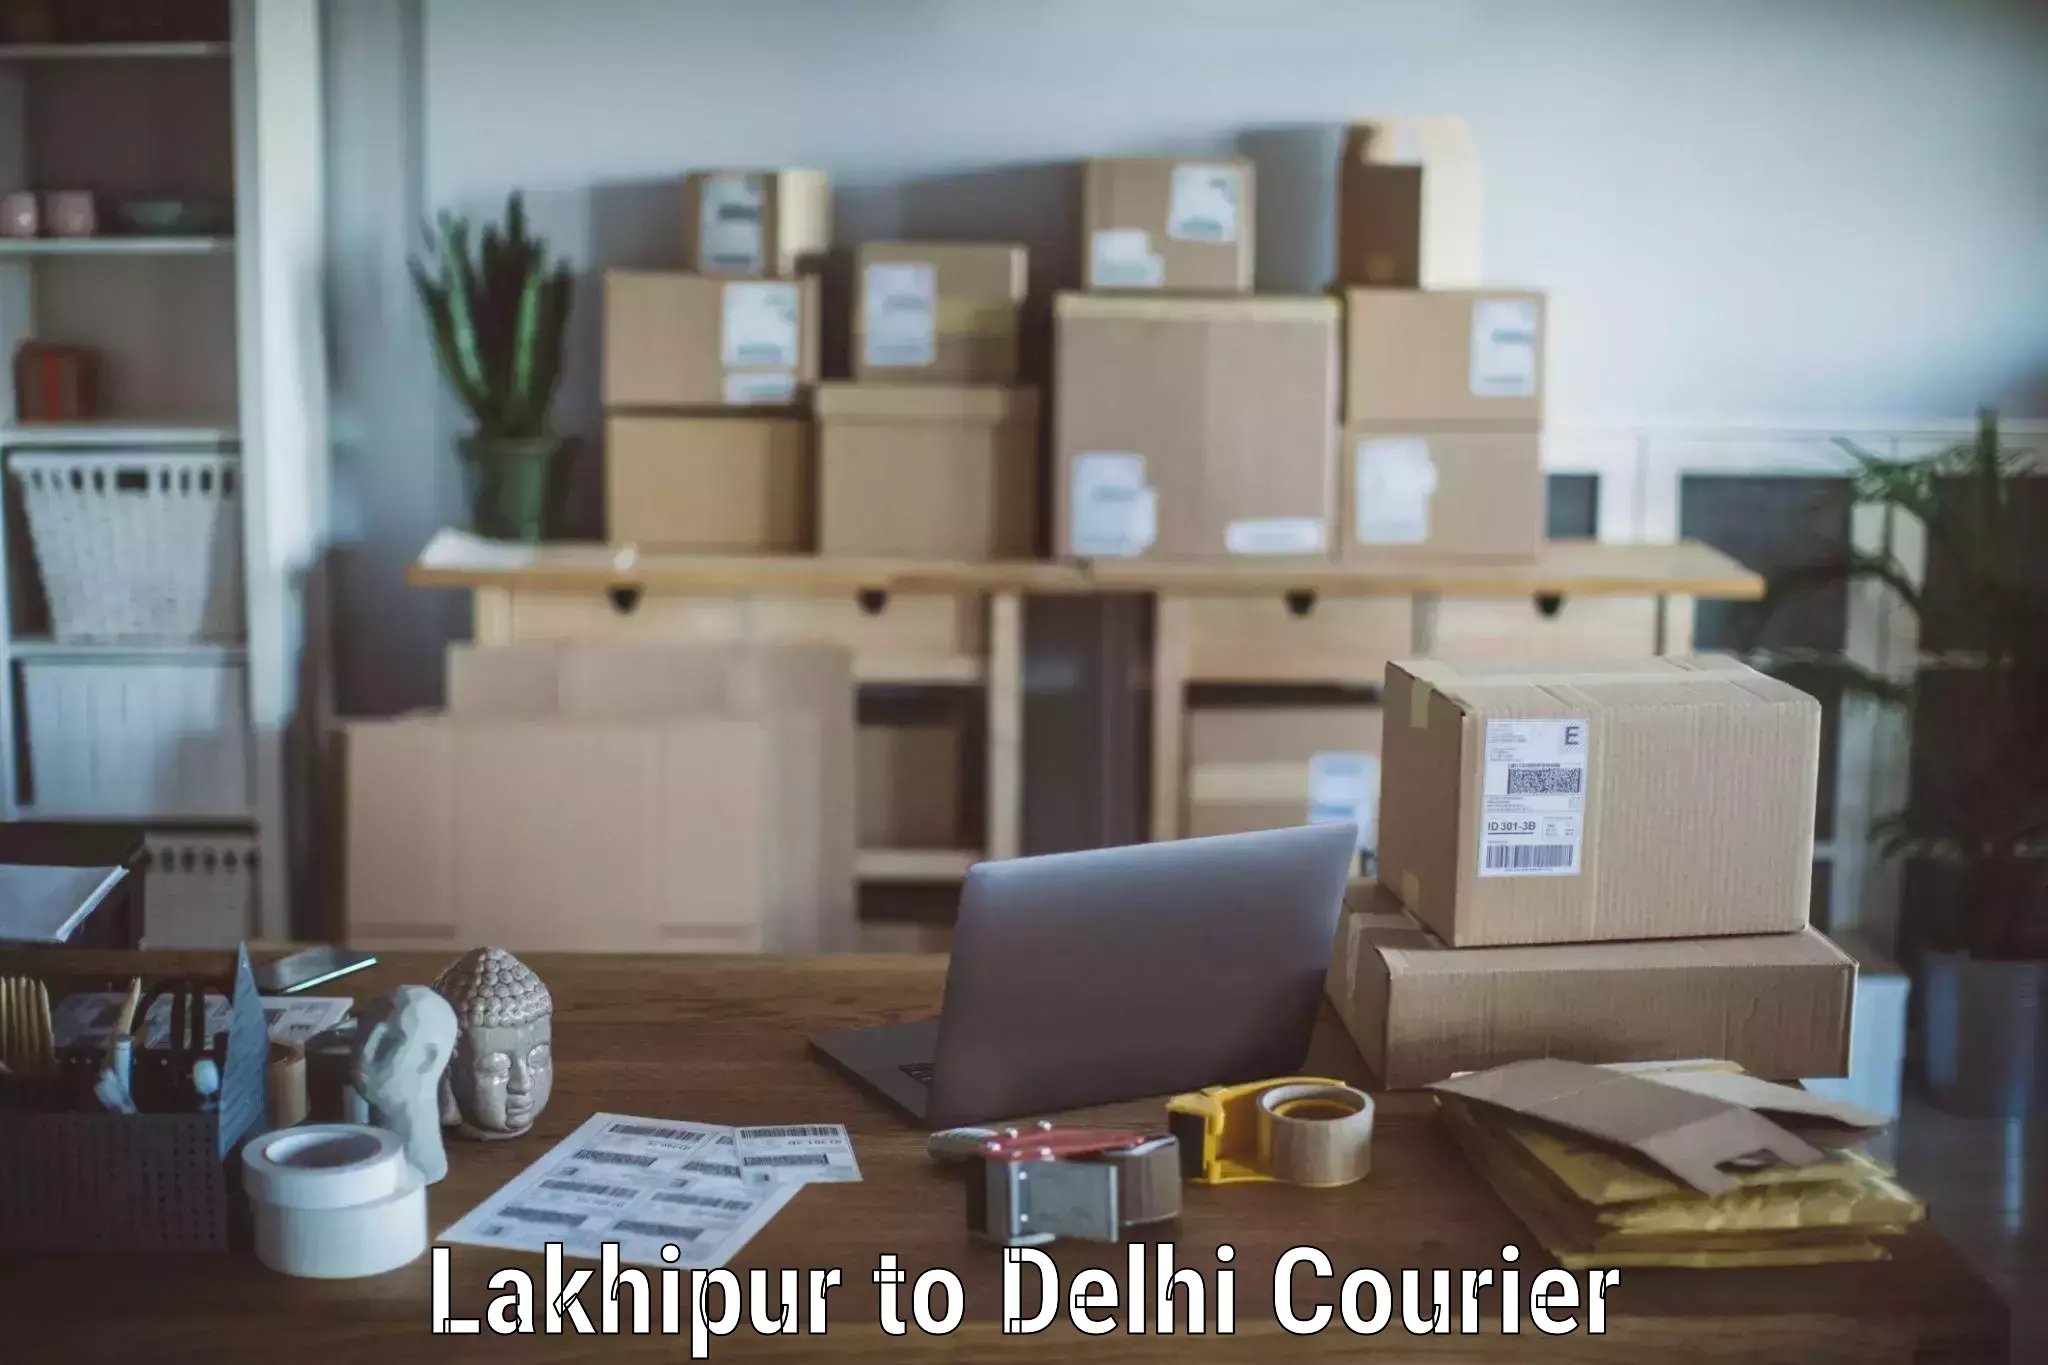 Furniture transport service Lakhipur to Delhi